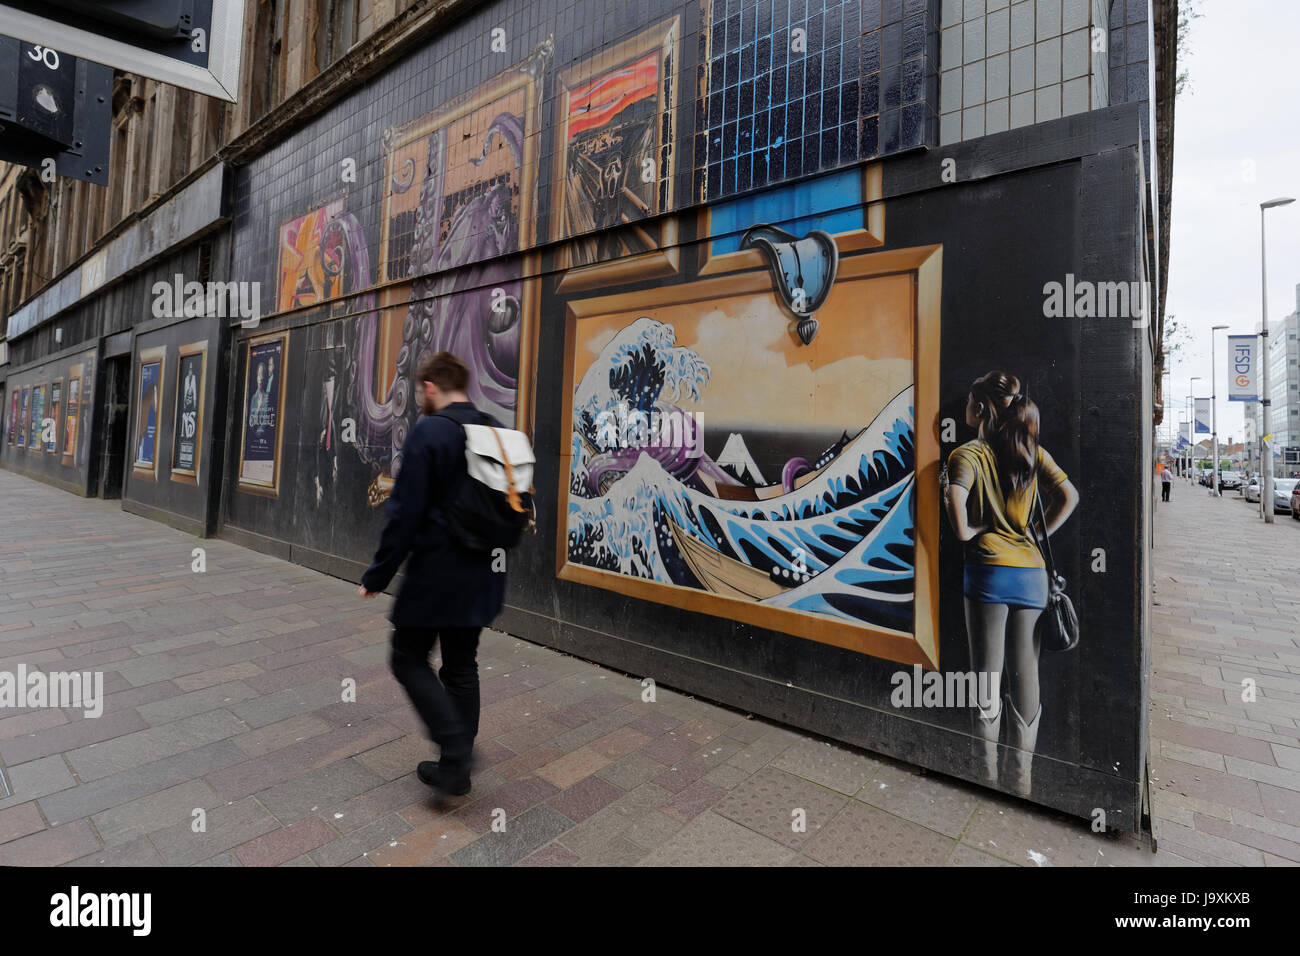 Glasgow public art graffiti commissionato su Argyle street con inserzioni om sito di costruzione per essere demolita per nuovi hotel Foto Stock